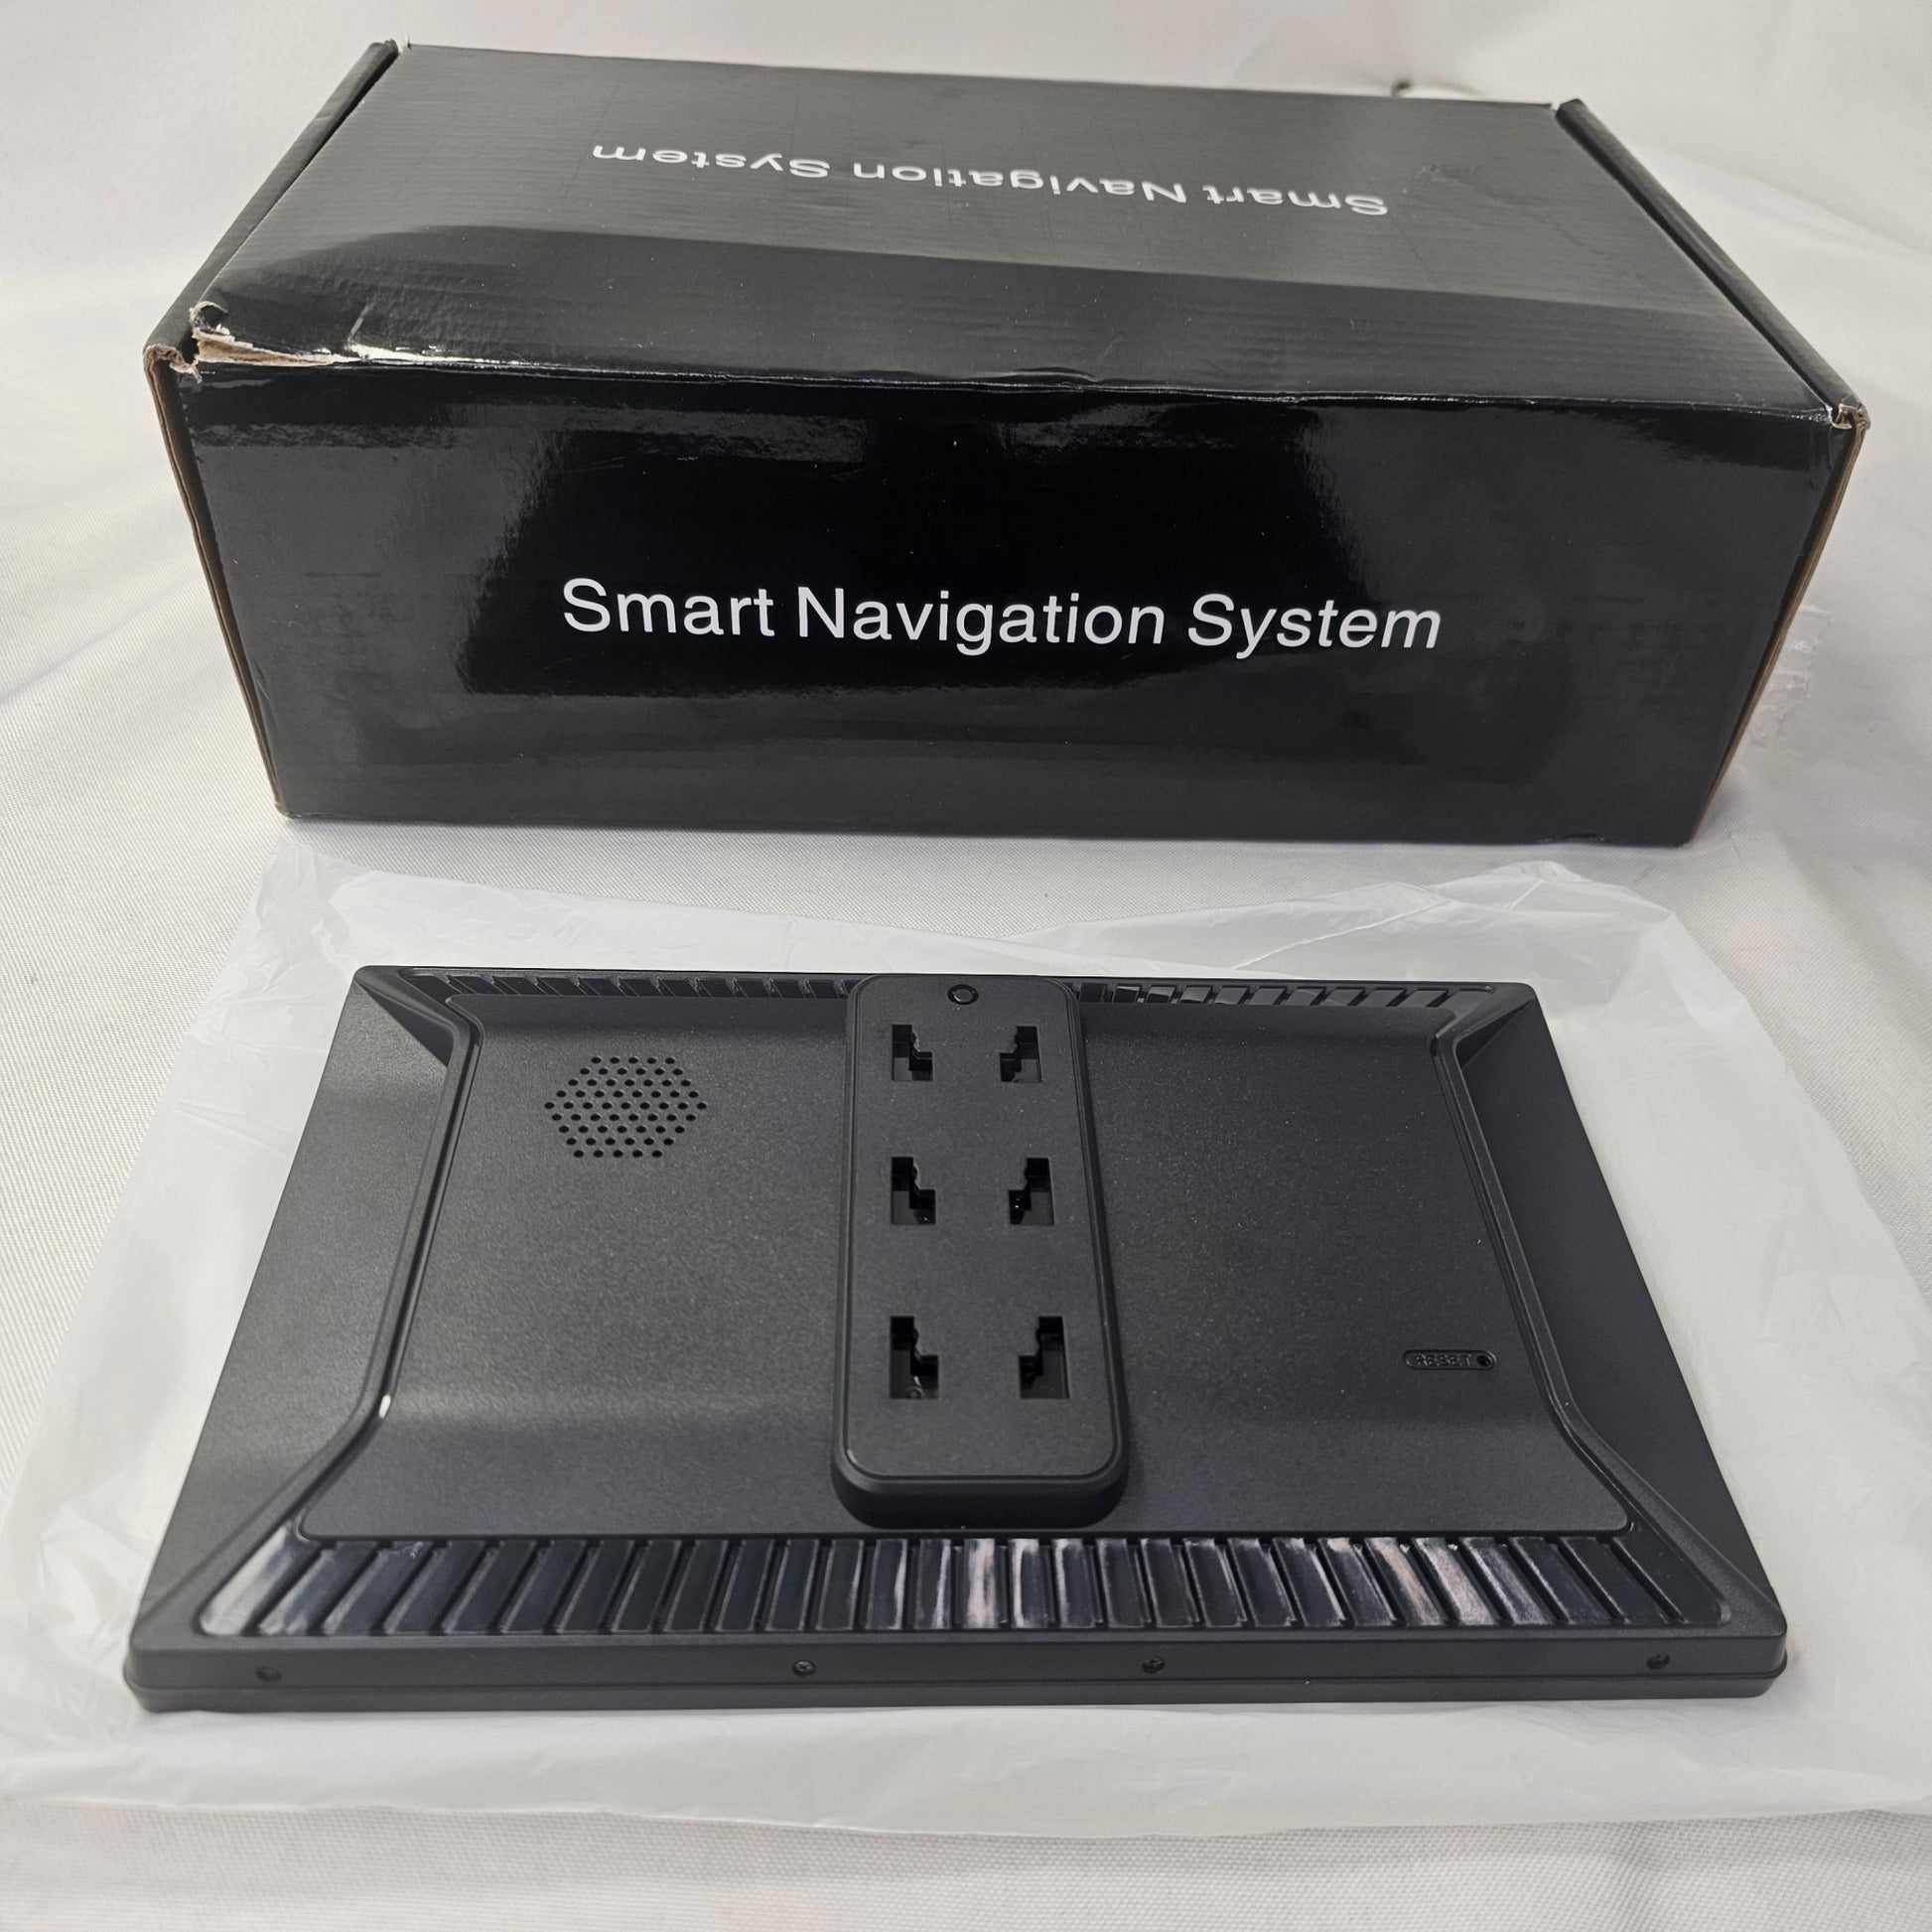 Smart Navigation System - DQ Distribution